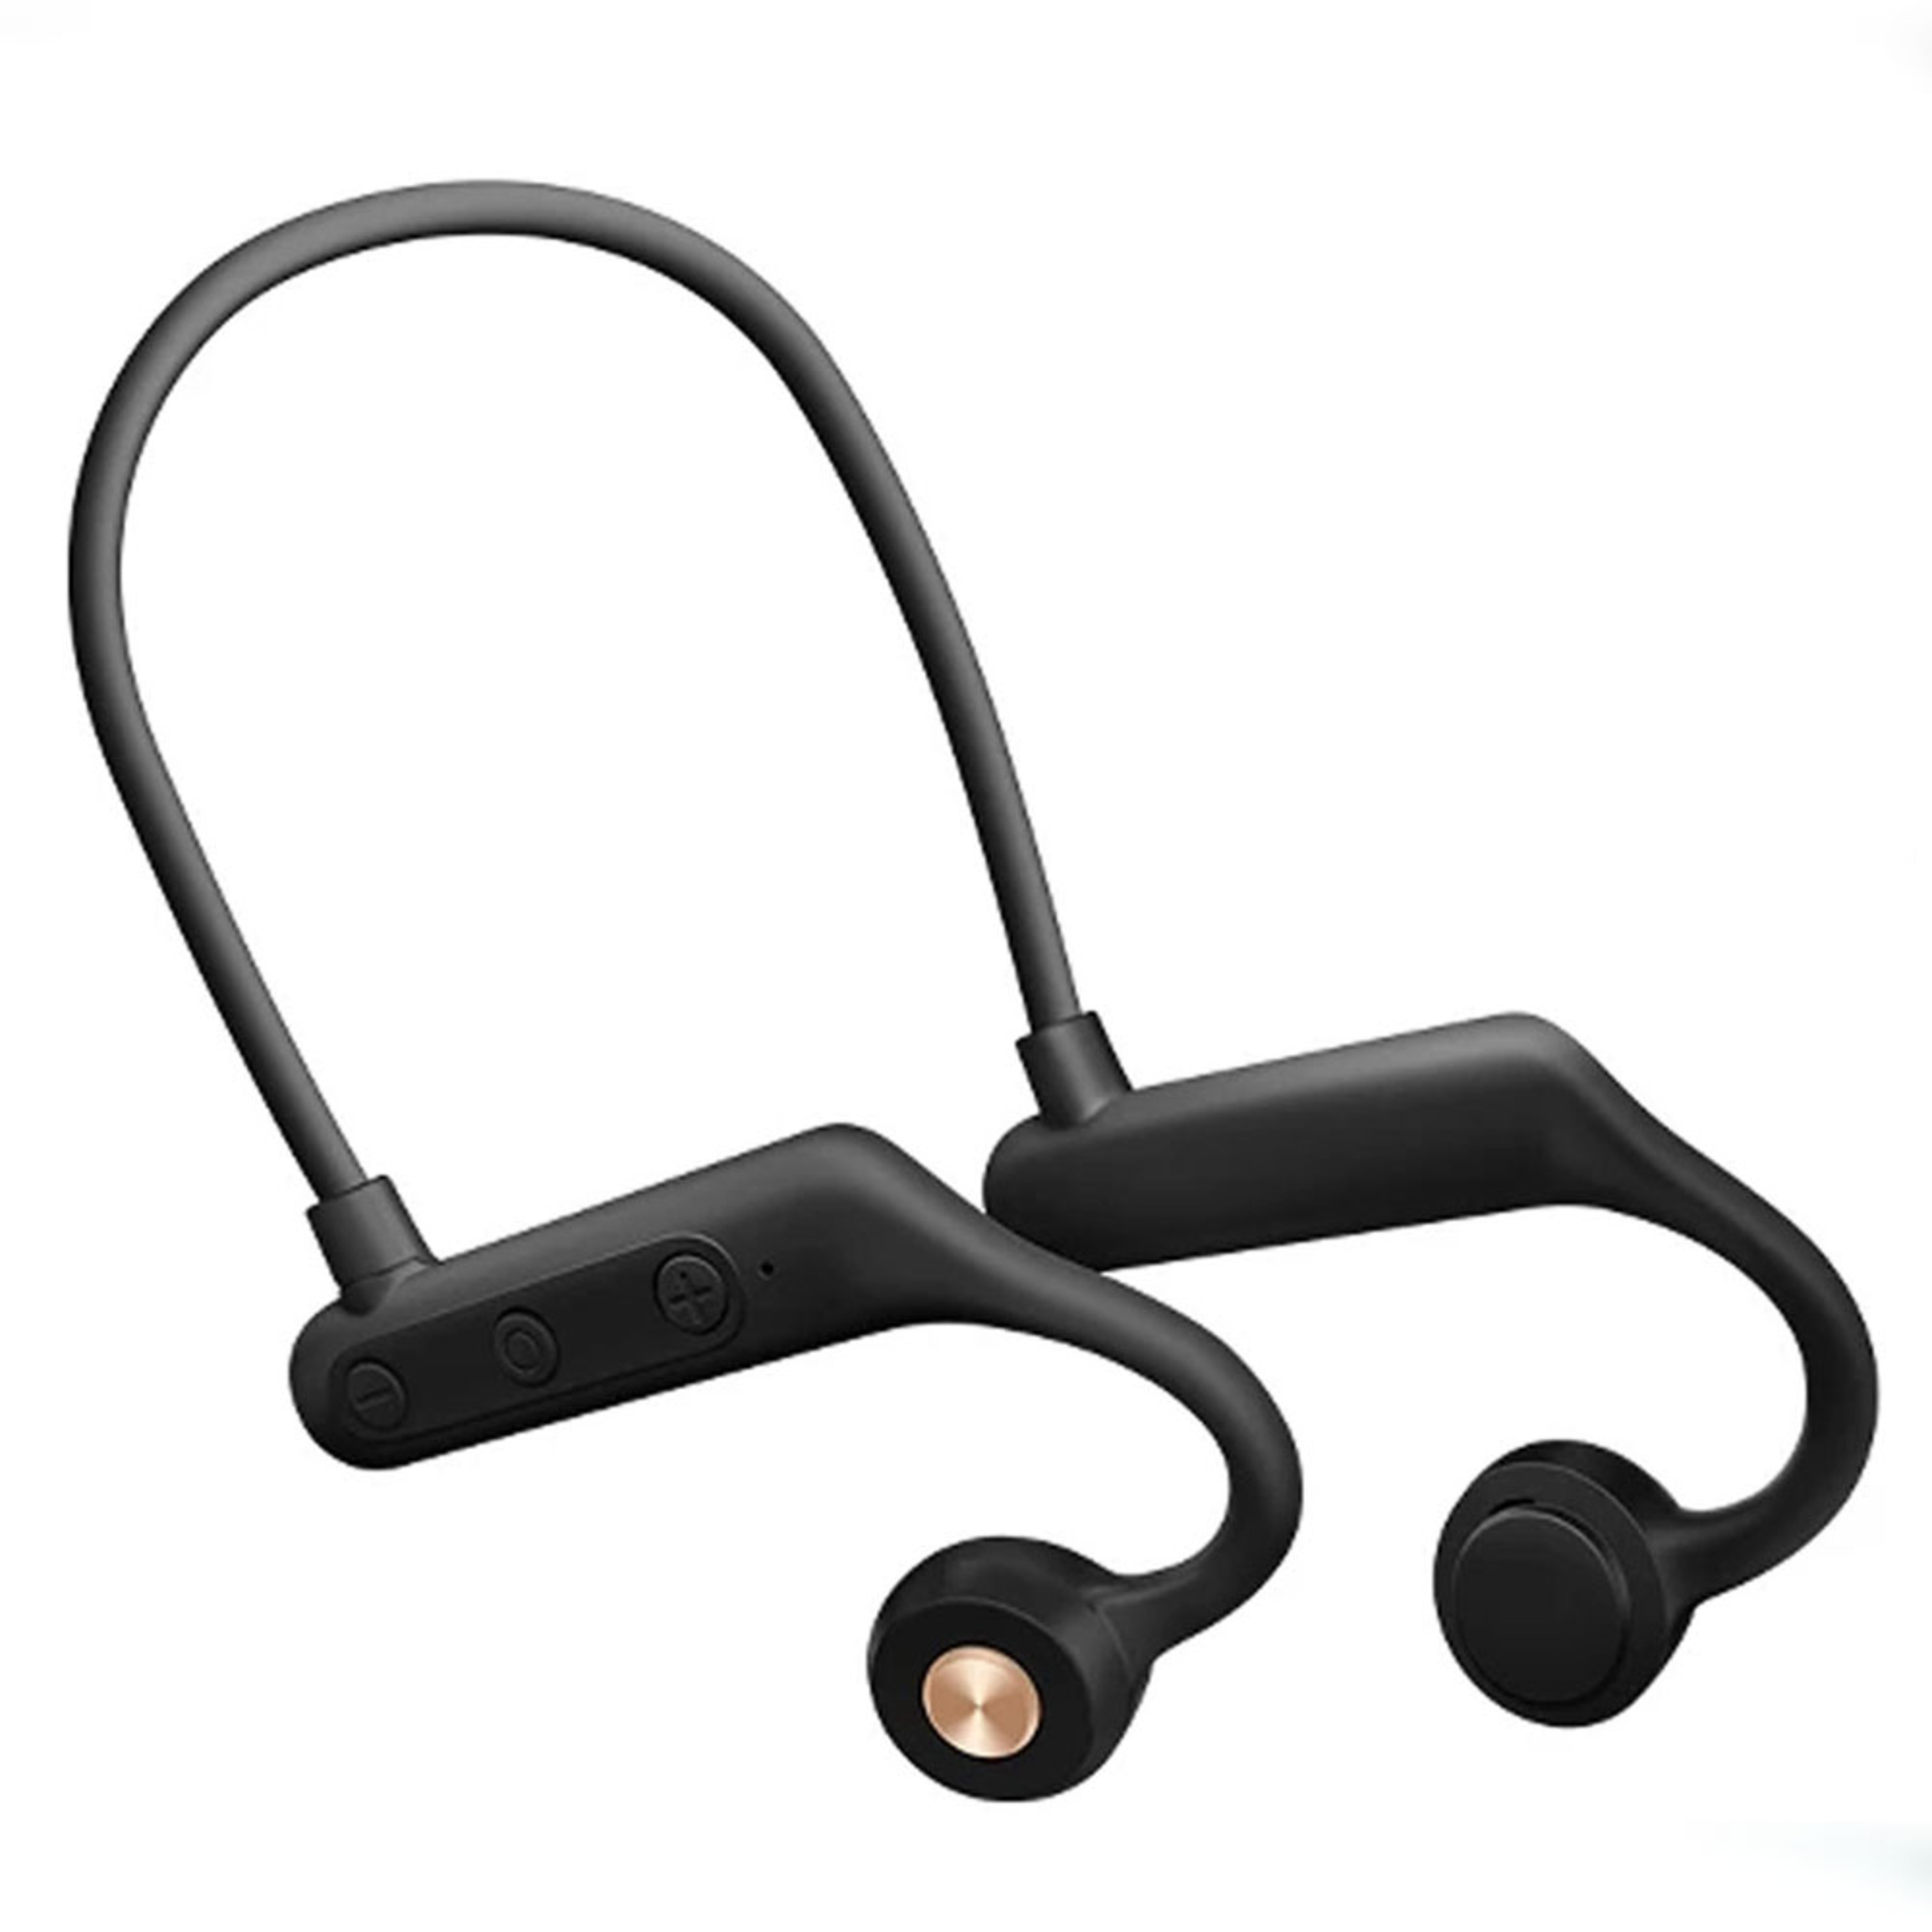 Auriculares Inalambricos Bluetooth Klack - Negro - Transmisión Ósea Fitness  MKP